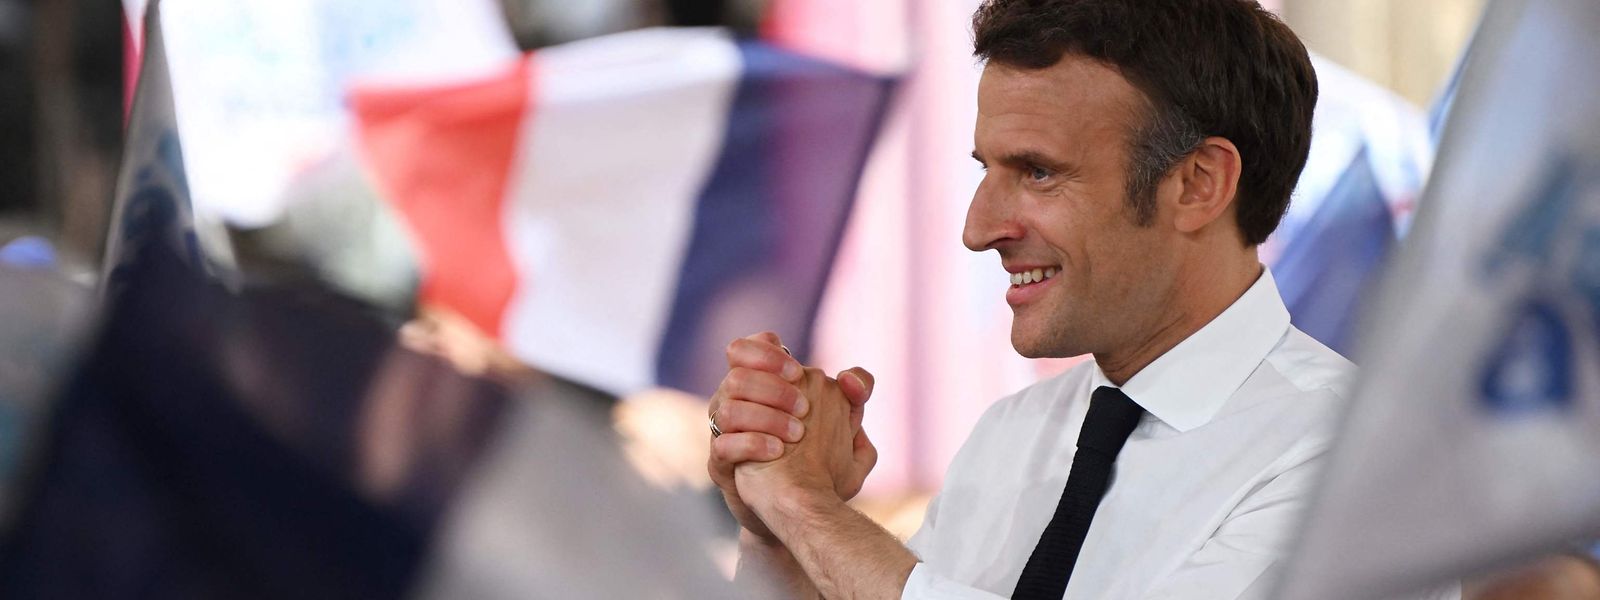 Für Emmanuel Macron geht es darum, sich wieder eine Parlamentsmehrheit zu sichern.